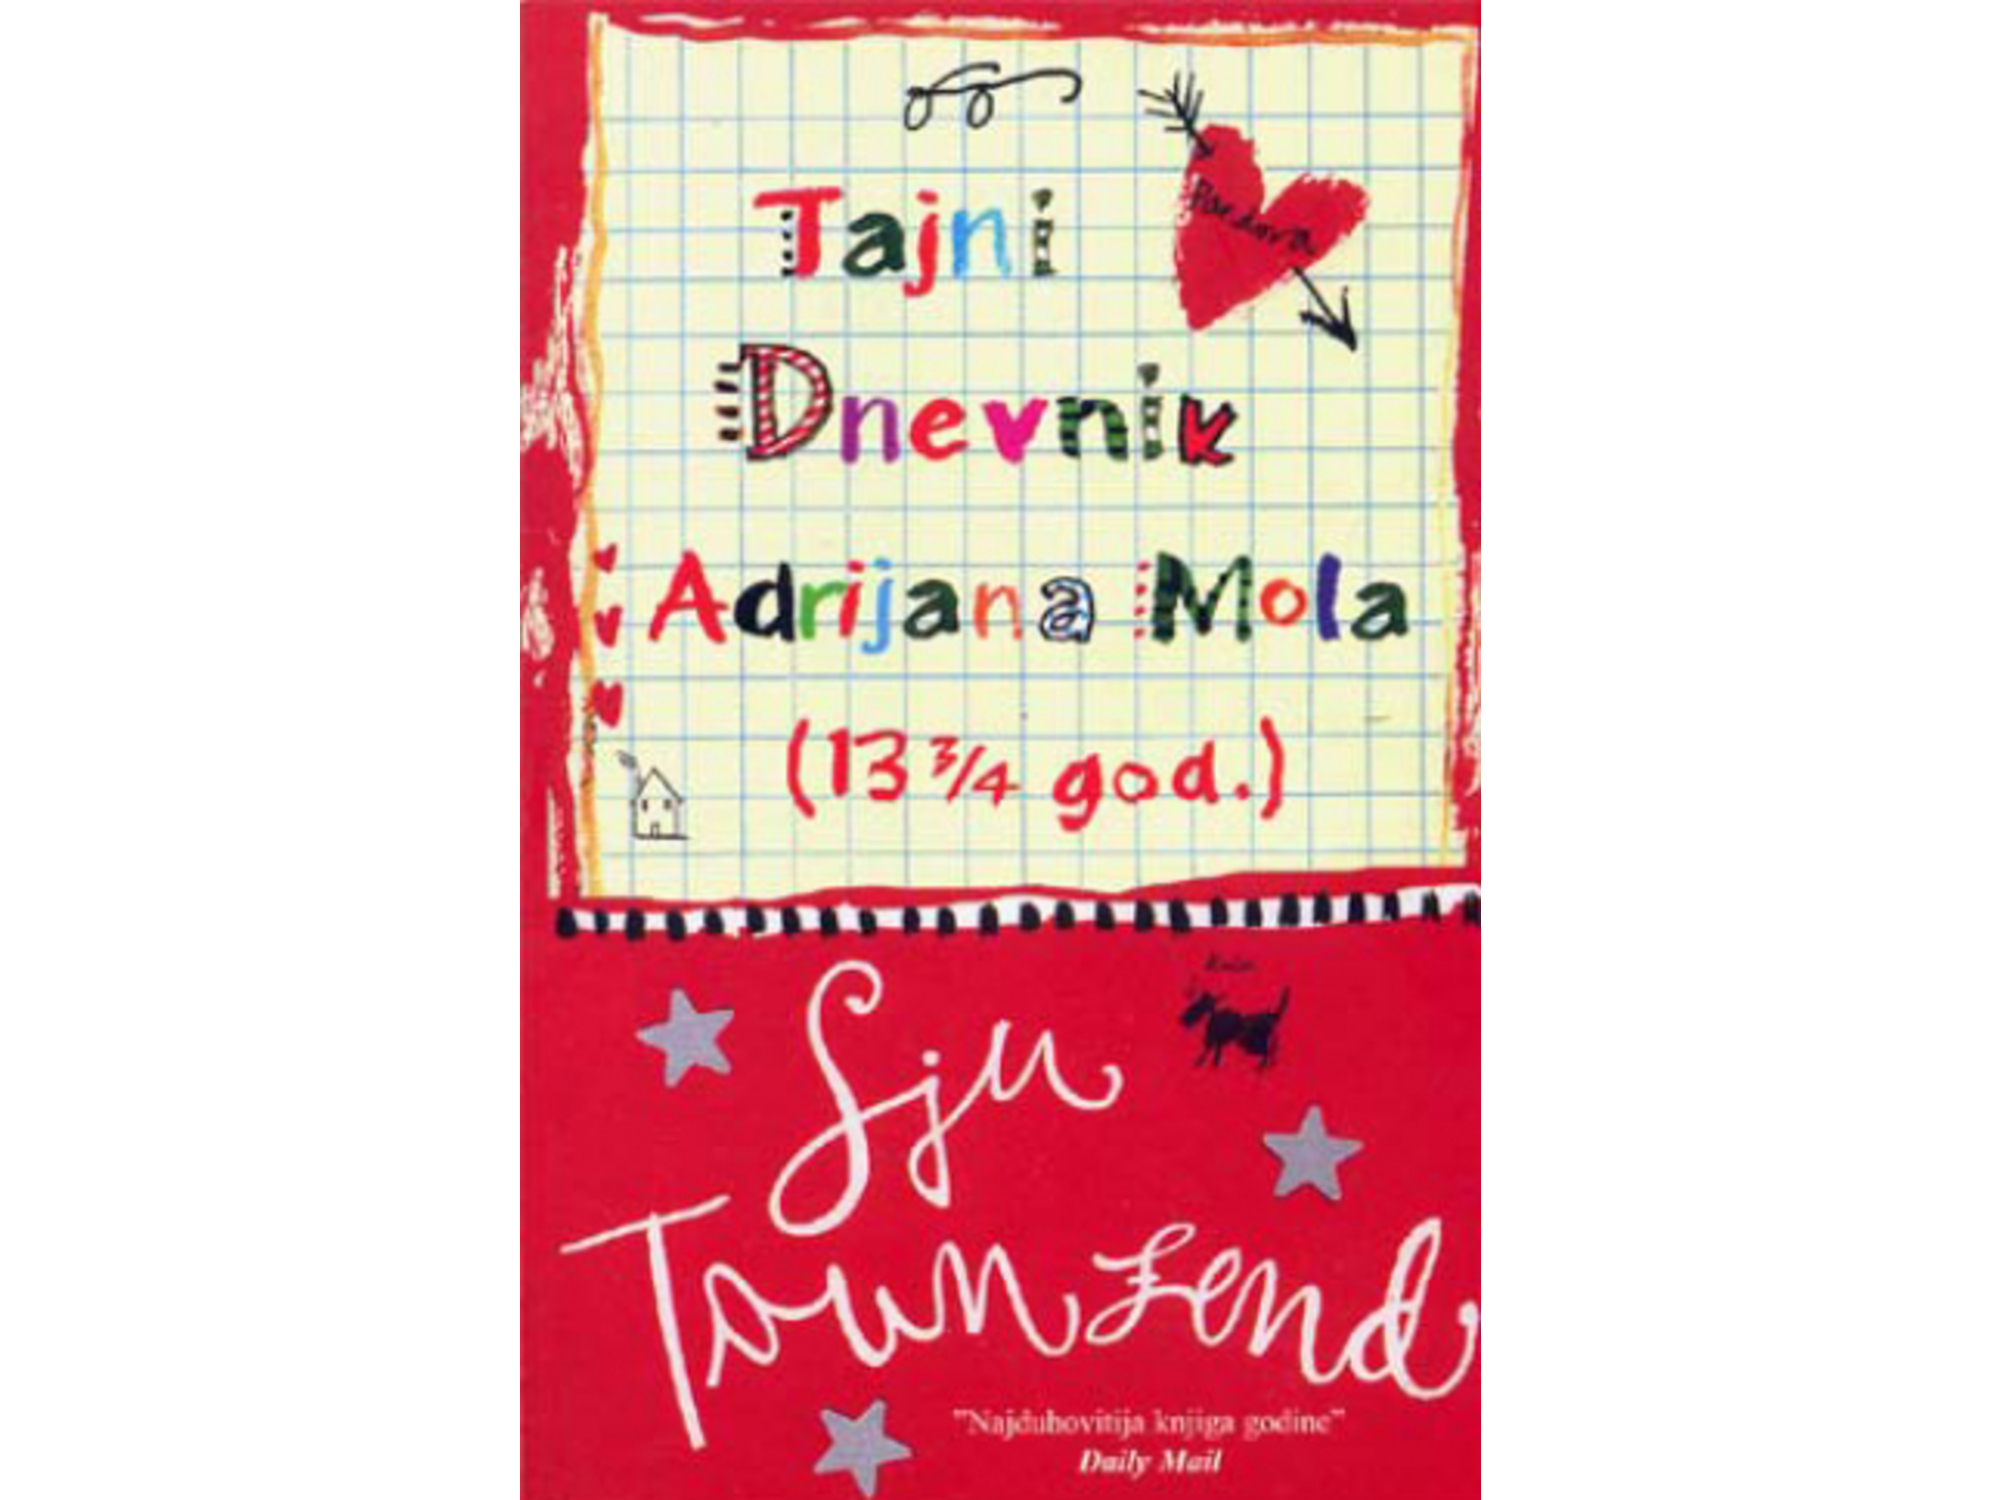 Tajni dnevnik Adrijana Mola (13 i 3/4 god.) - Sju Taunzend